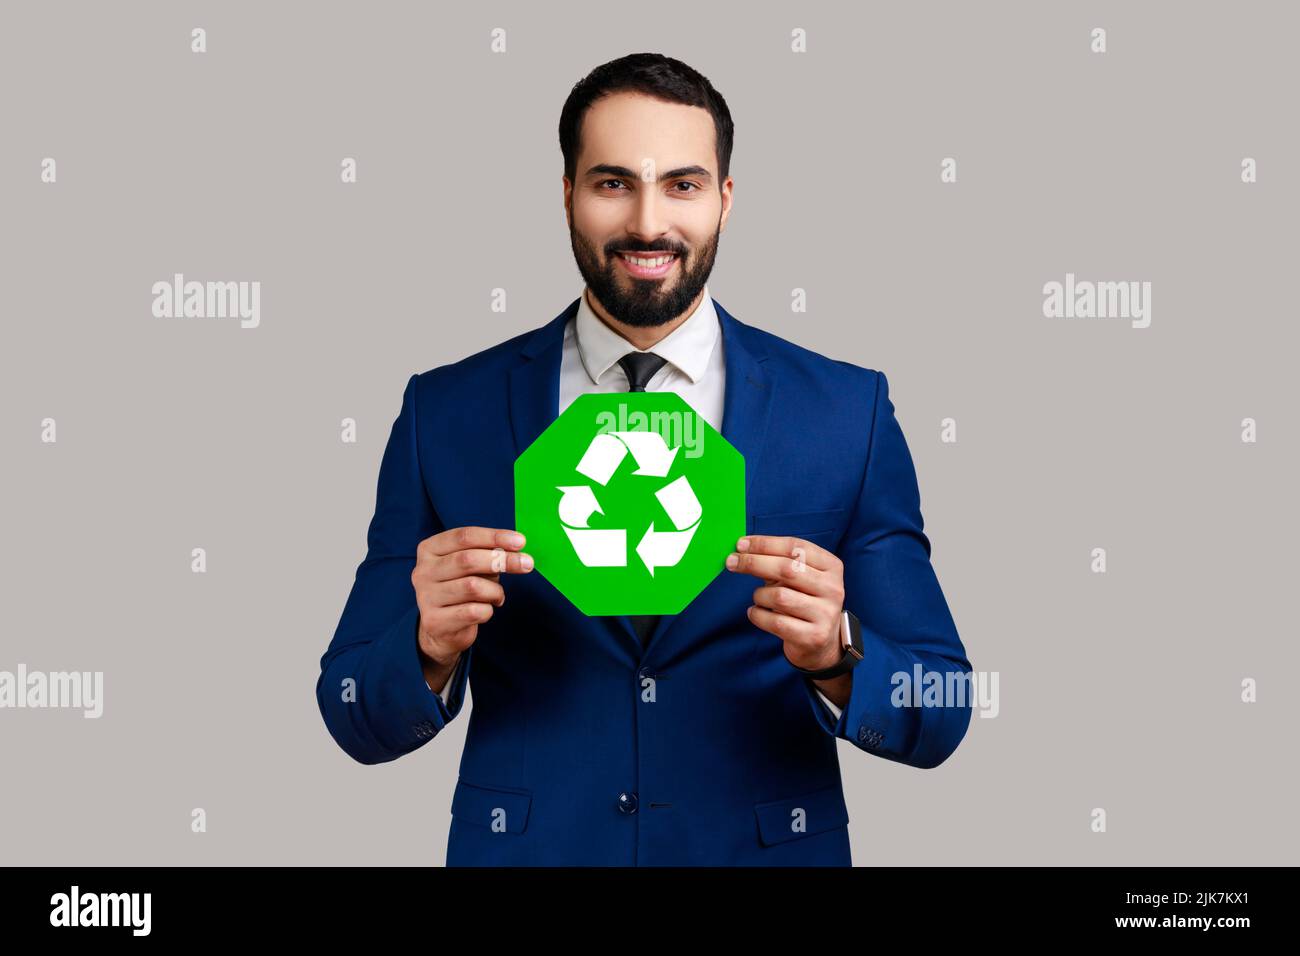 Positiv optimistischer bärtiger Geschäftsmann mit grünem Recycling-Zeichen, Umweltschutz, Ökologie-Konzept, im offiziellen Stil Anzug tragen. Innenaufnahme des Studios isoliert auf grauem Hintergrund. Stockfoto